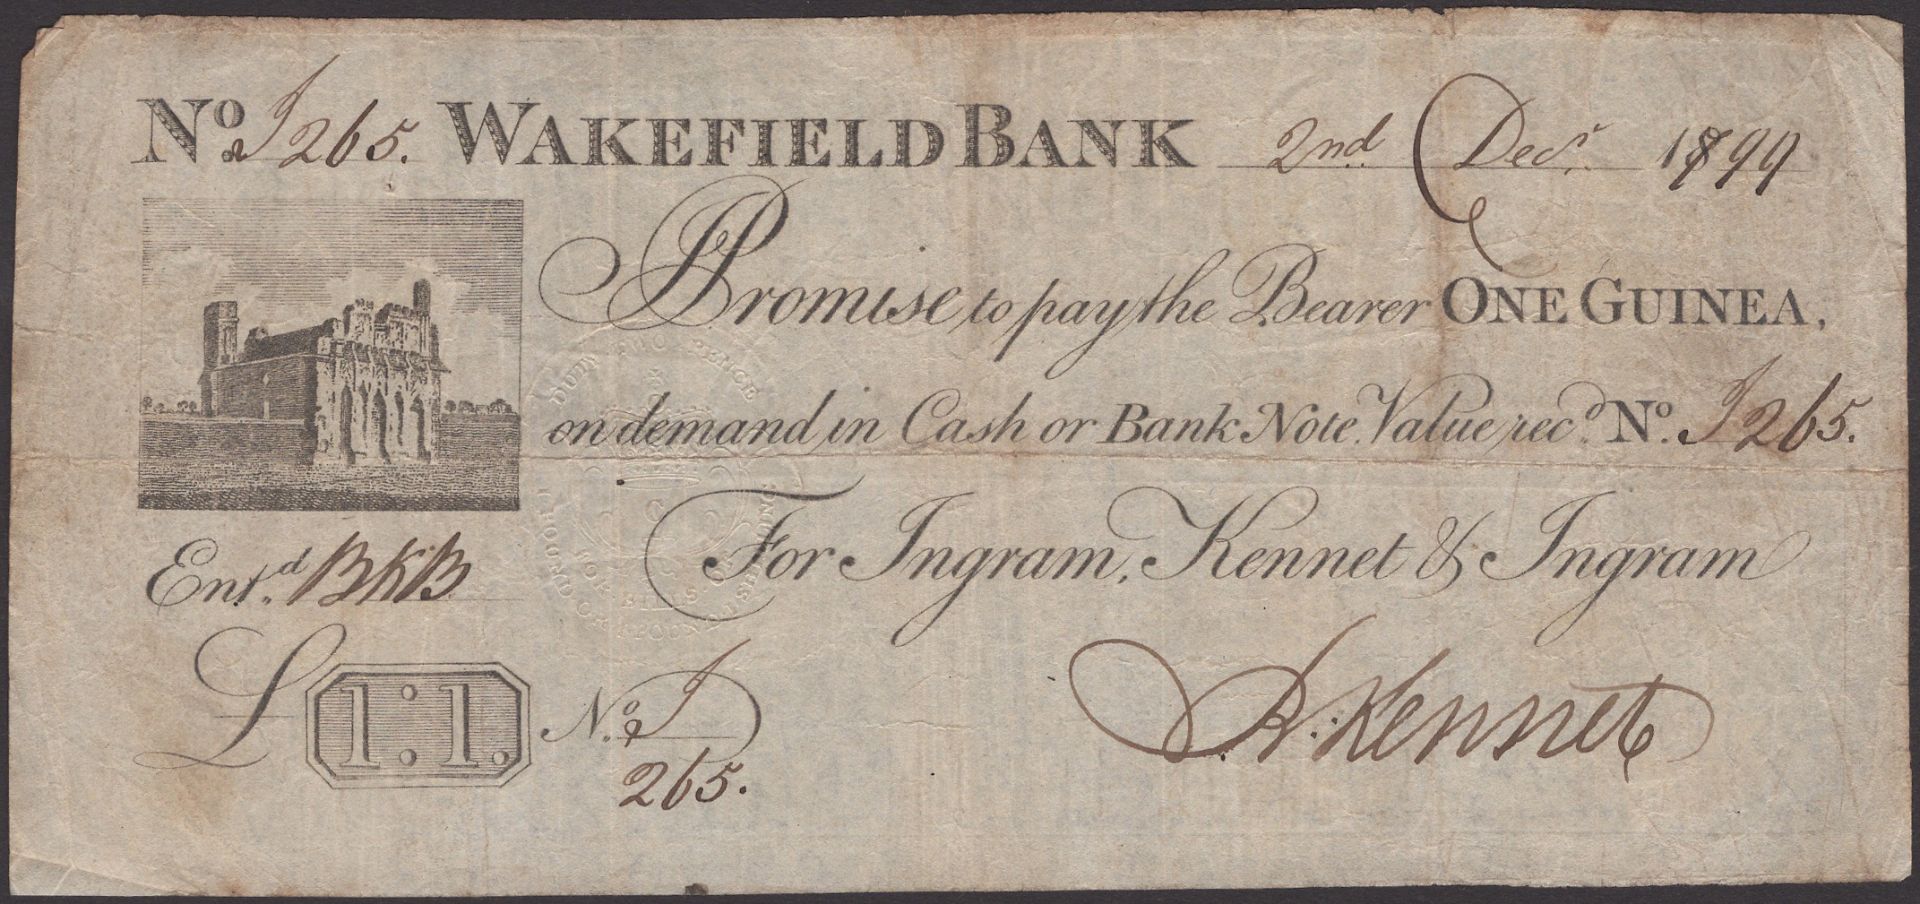 Wakefield Bank, for Ingram, Kennet & Ingram, 1 Guinea, 2 December 1799, serial number I265,...